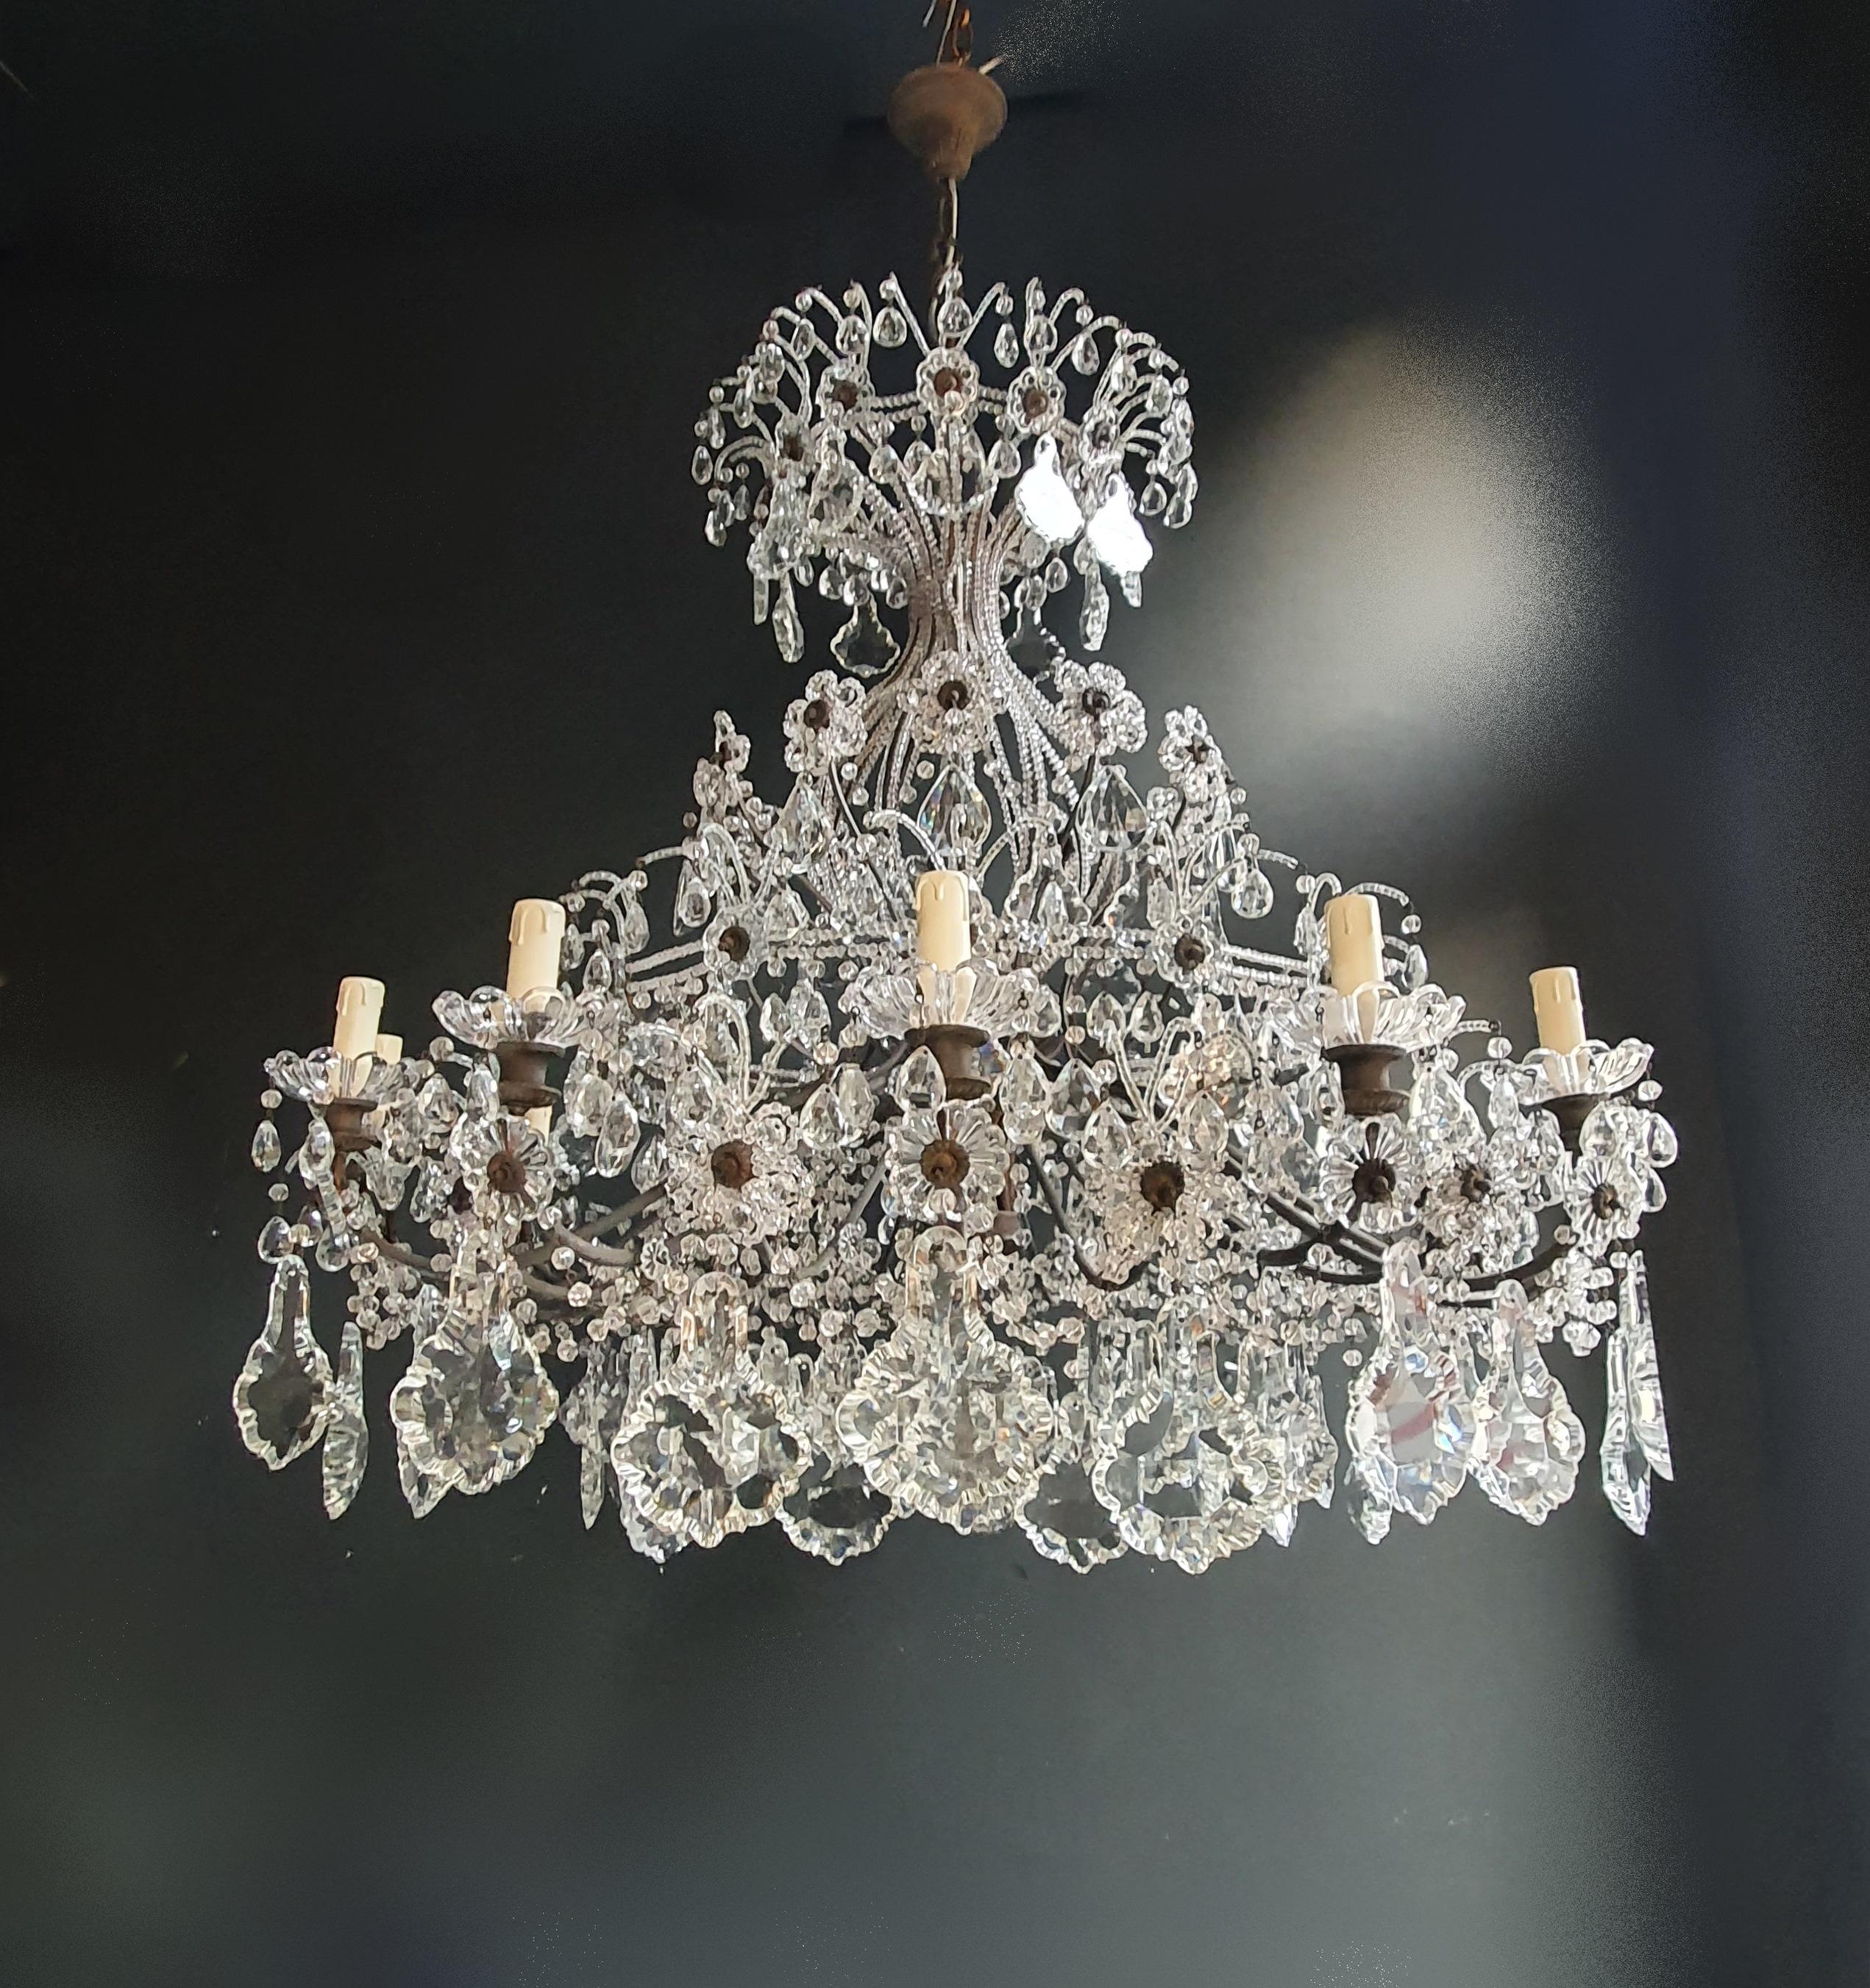 Huge Candelabrum Crystal Antique Chandelier Ceiling Lustre Art Nouveau 3